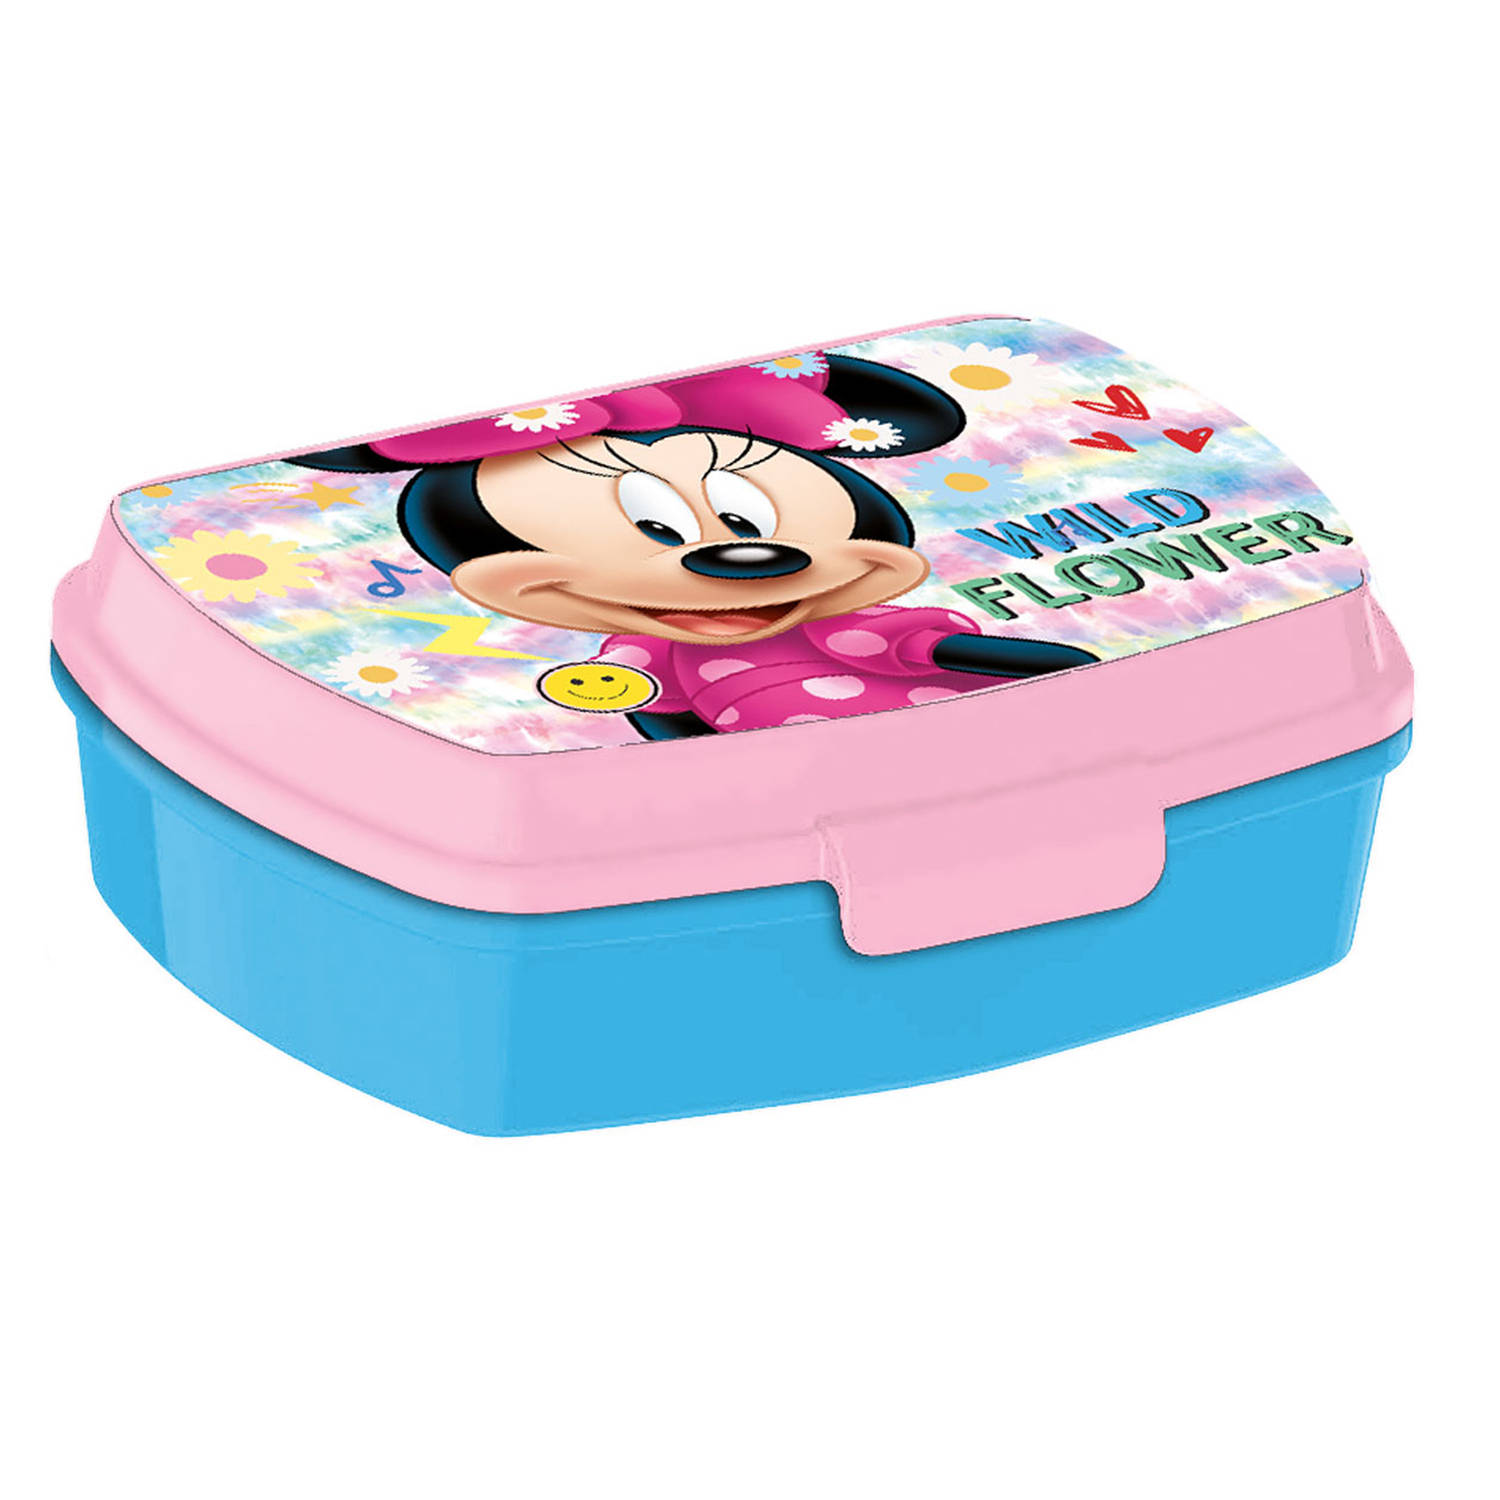 Disney Minnie Mouse broodtrommel/lunchbox voor kinderen - roze - kunststof - 20 x 10 cm